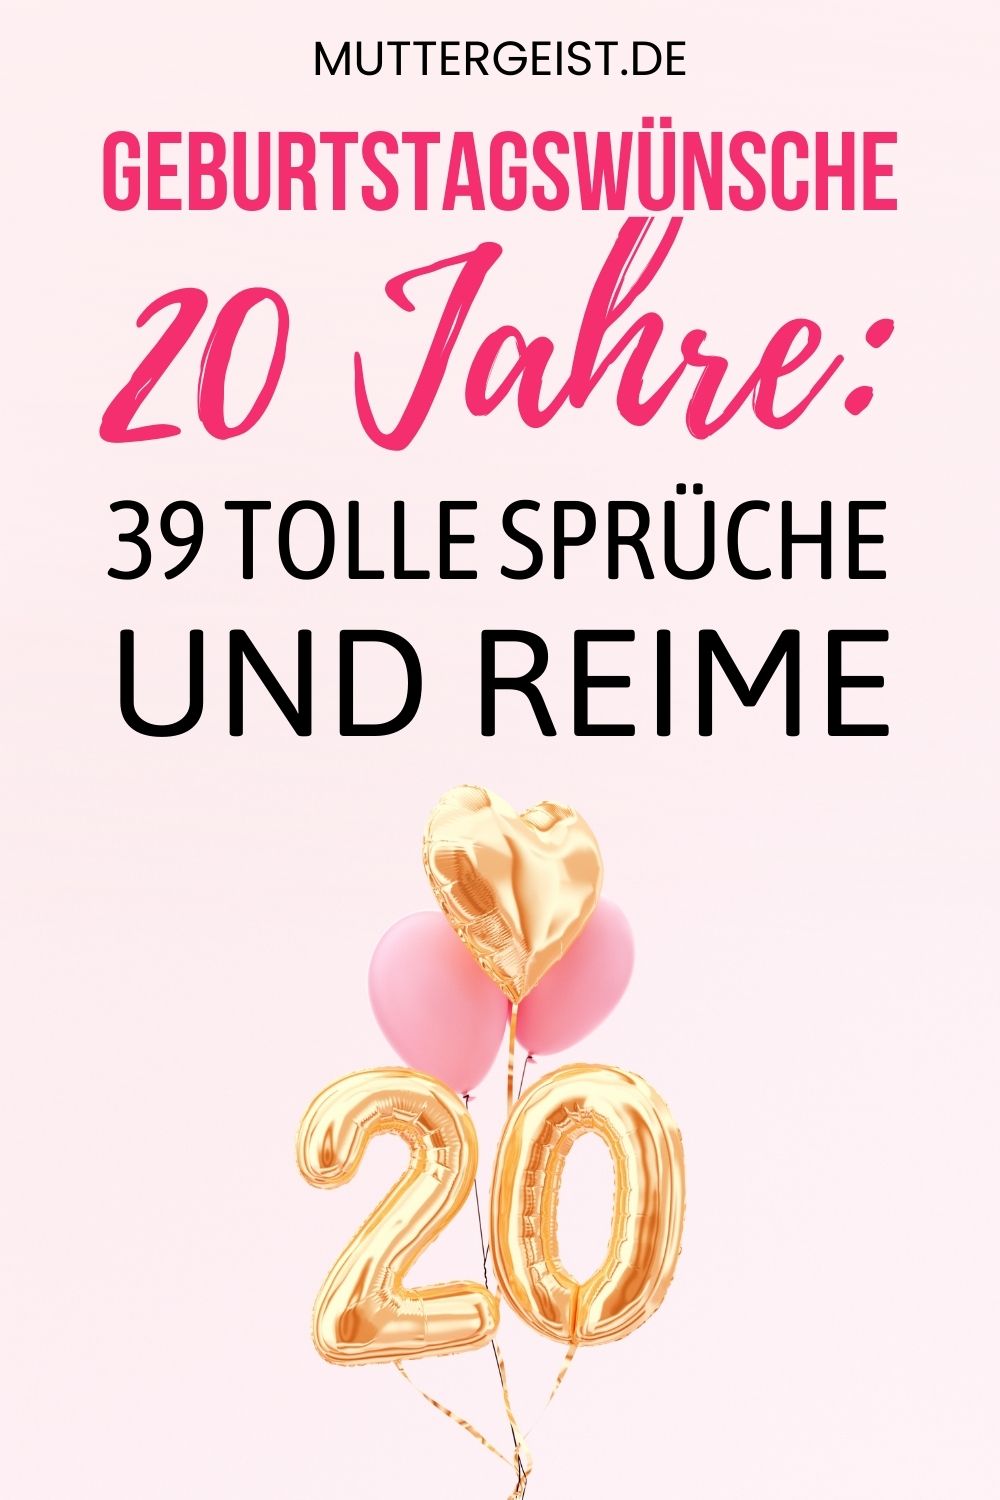 Geburtstagswünsche 20 Jahre – 39 tolle Sprüche und Reime Pinterest